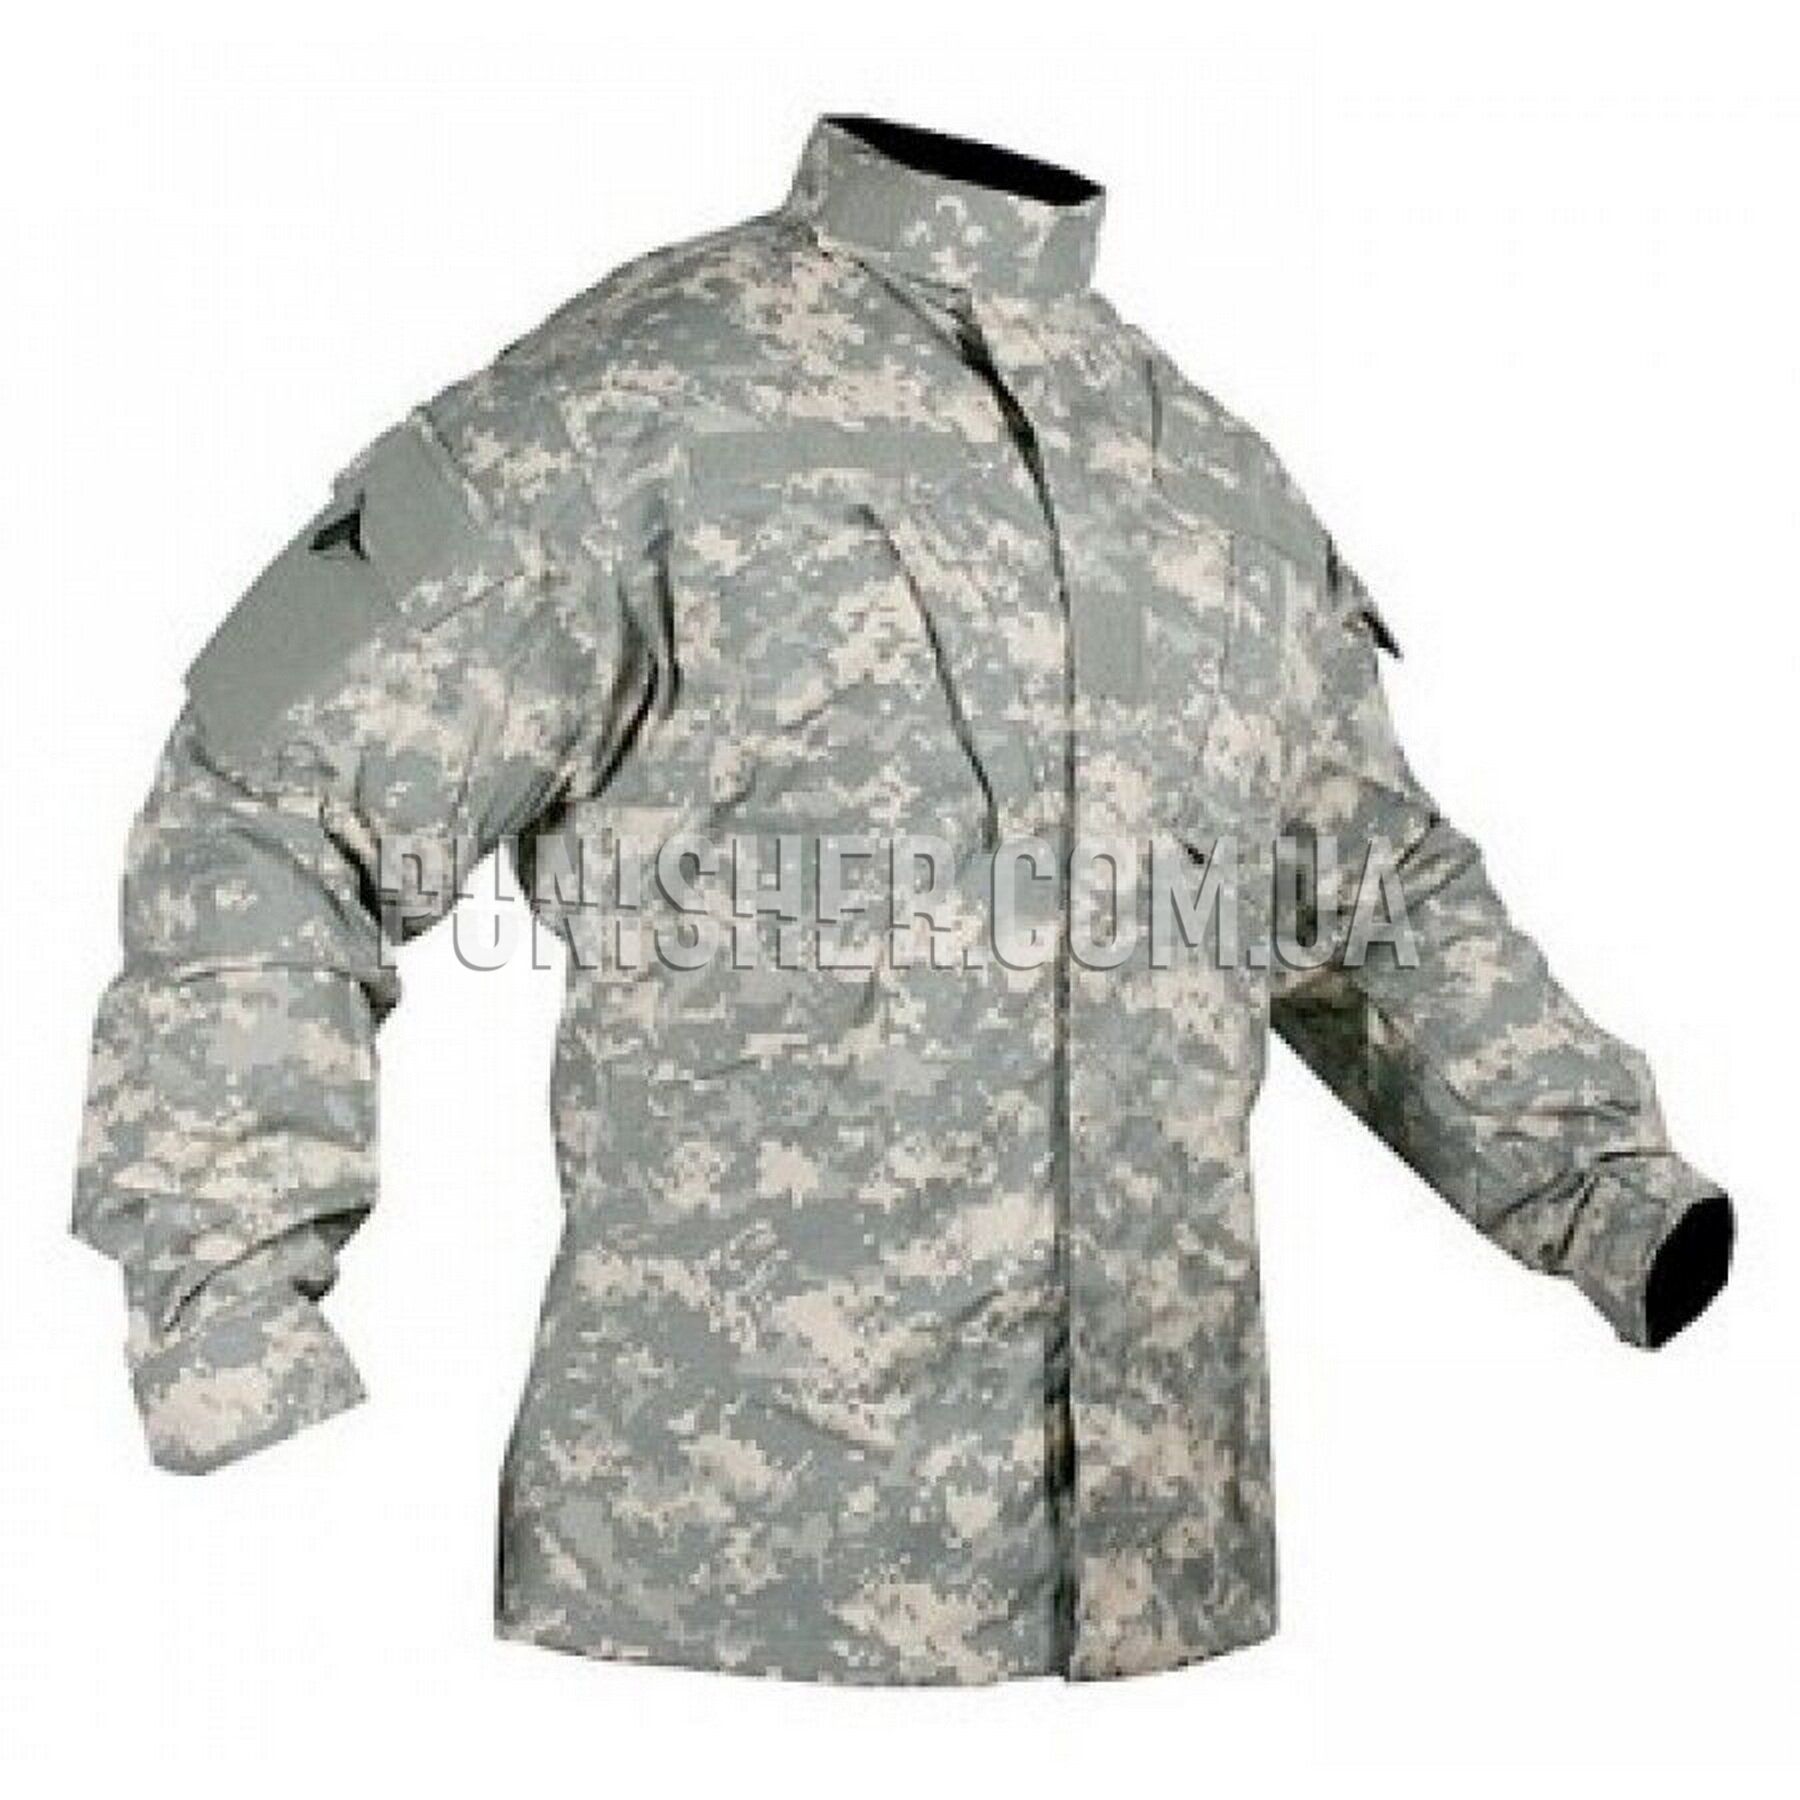 Rothco Army Combat uniform Shirt ACU Digital Camo